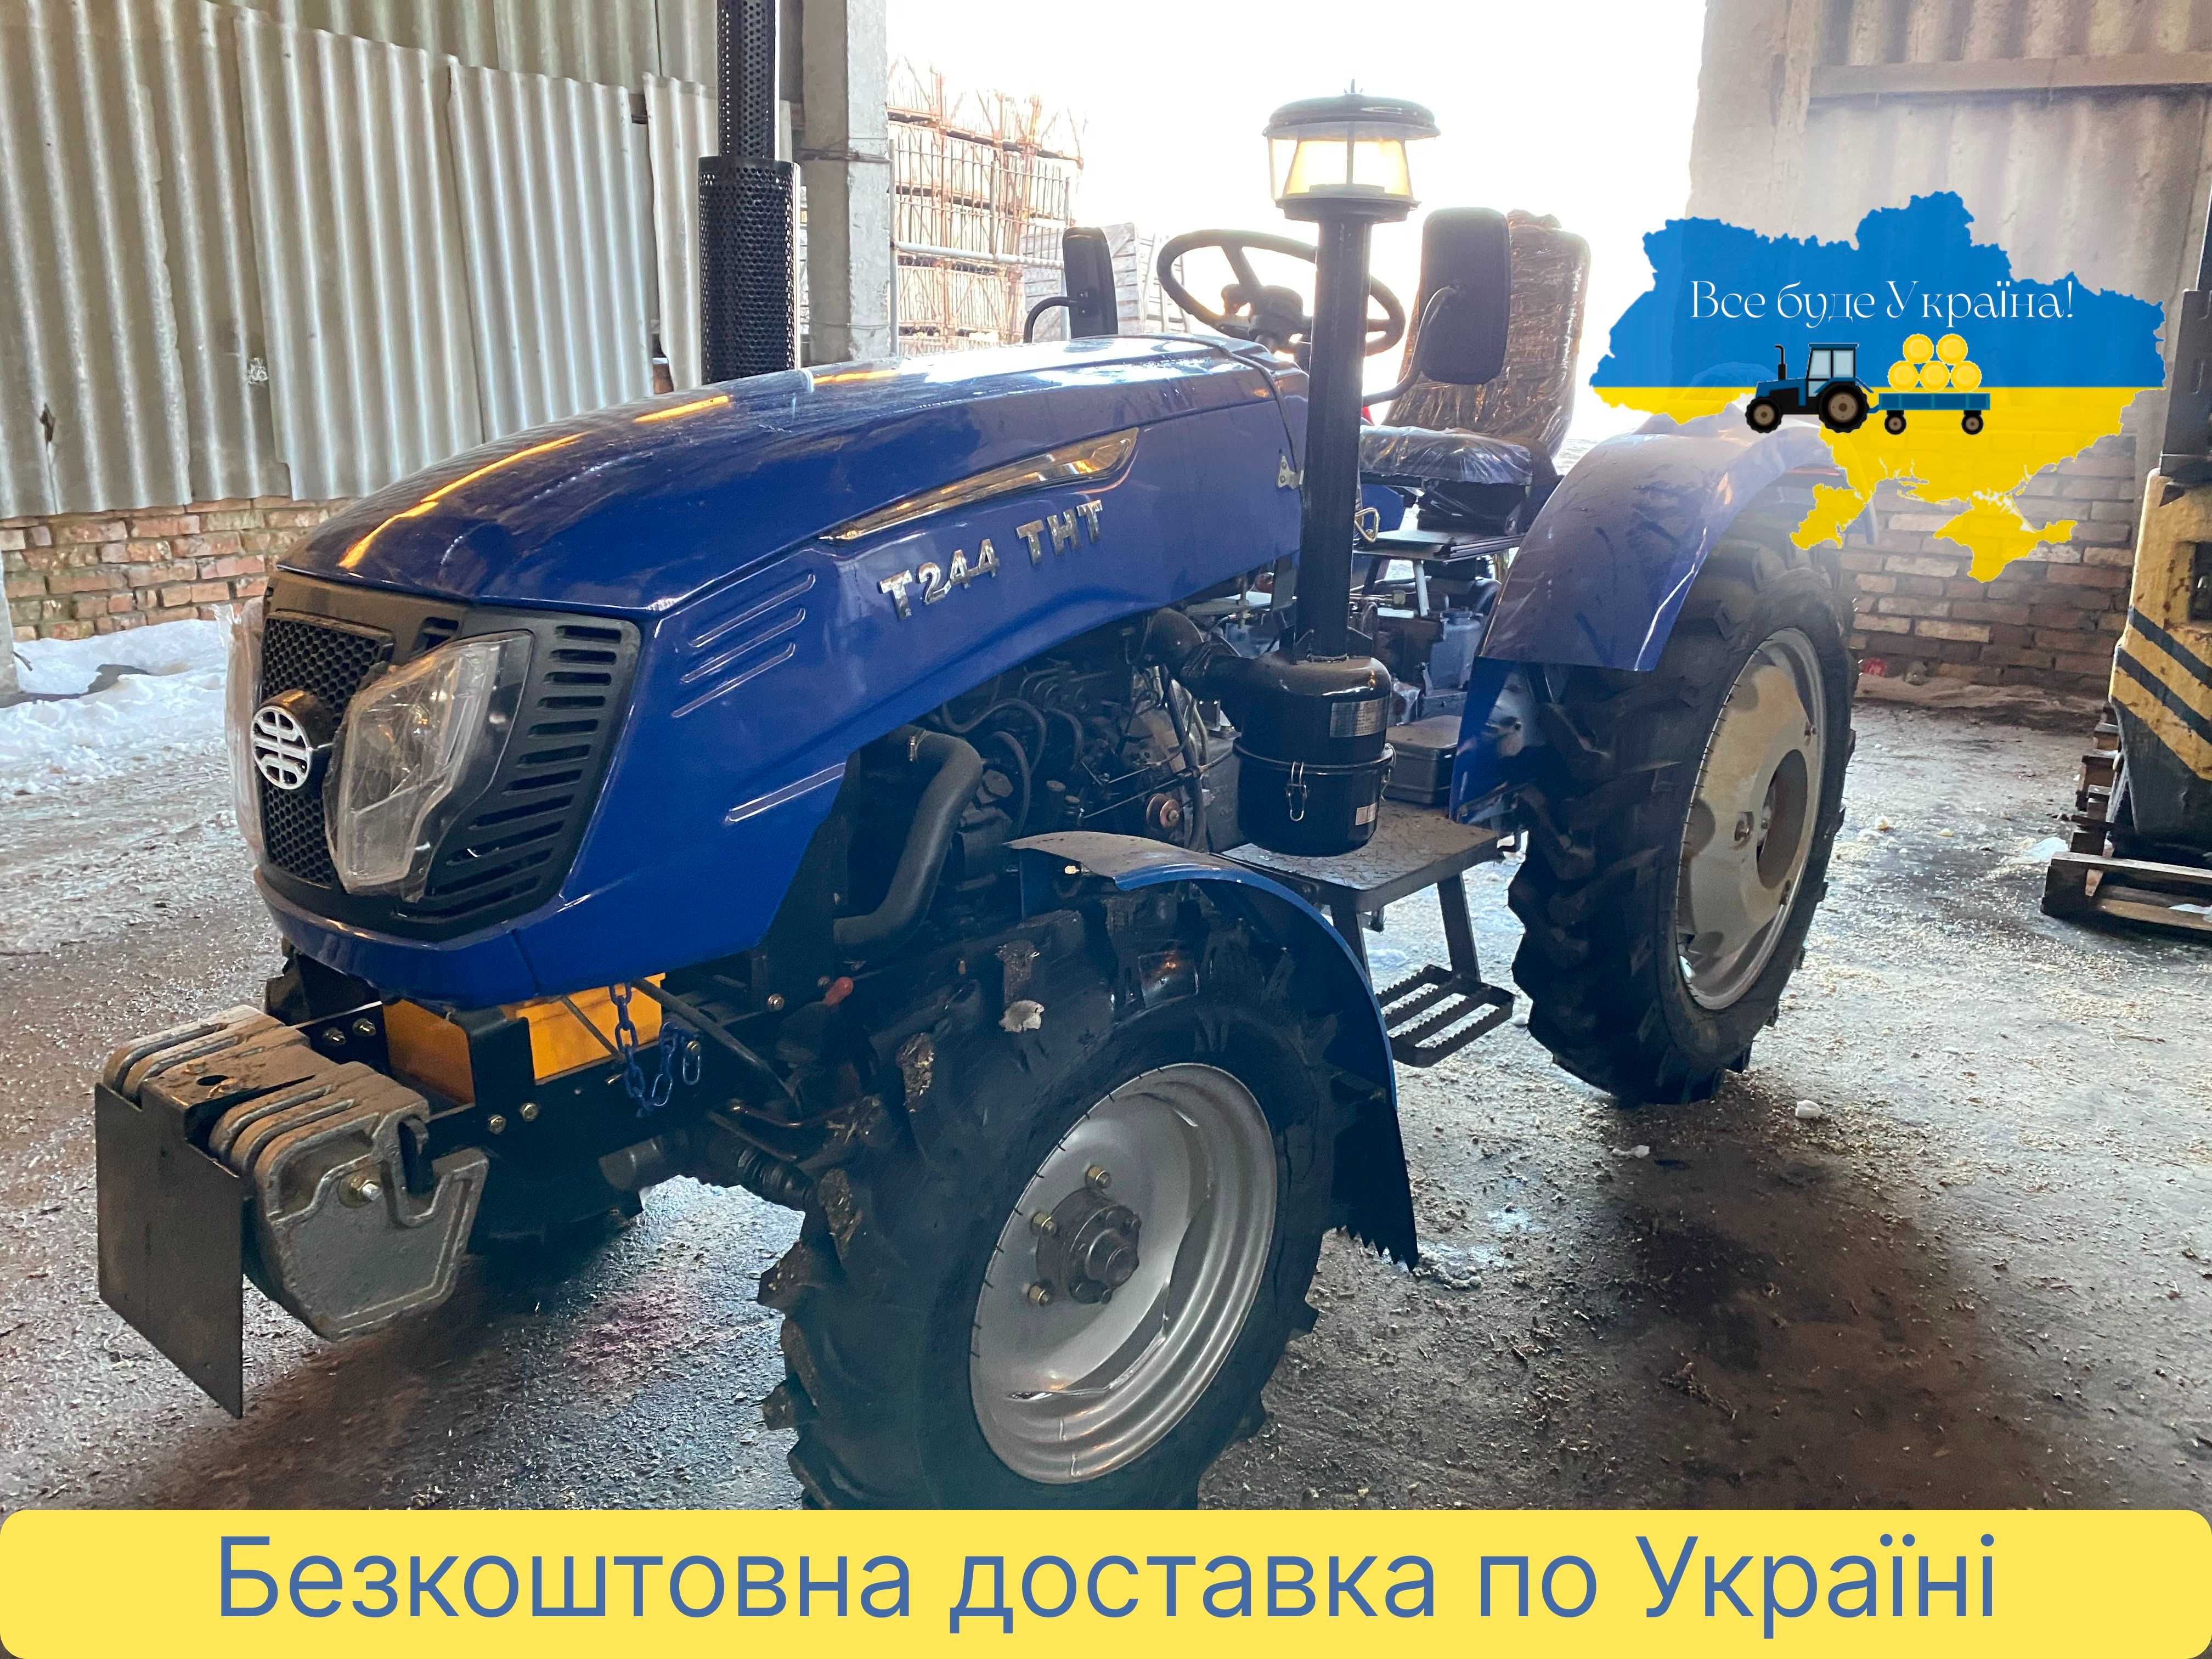 Трактор СИНТАЙ 244 ТНТ, полный привод, бесплатная ДОСТАВКА, ЗИП